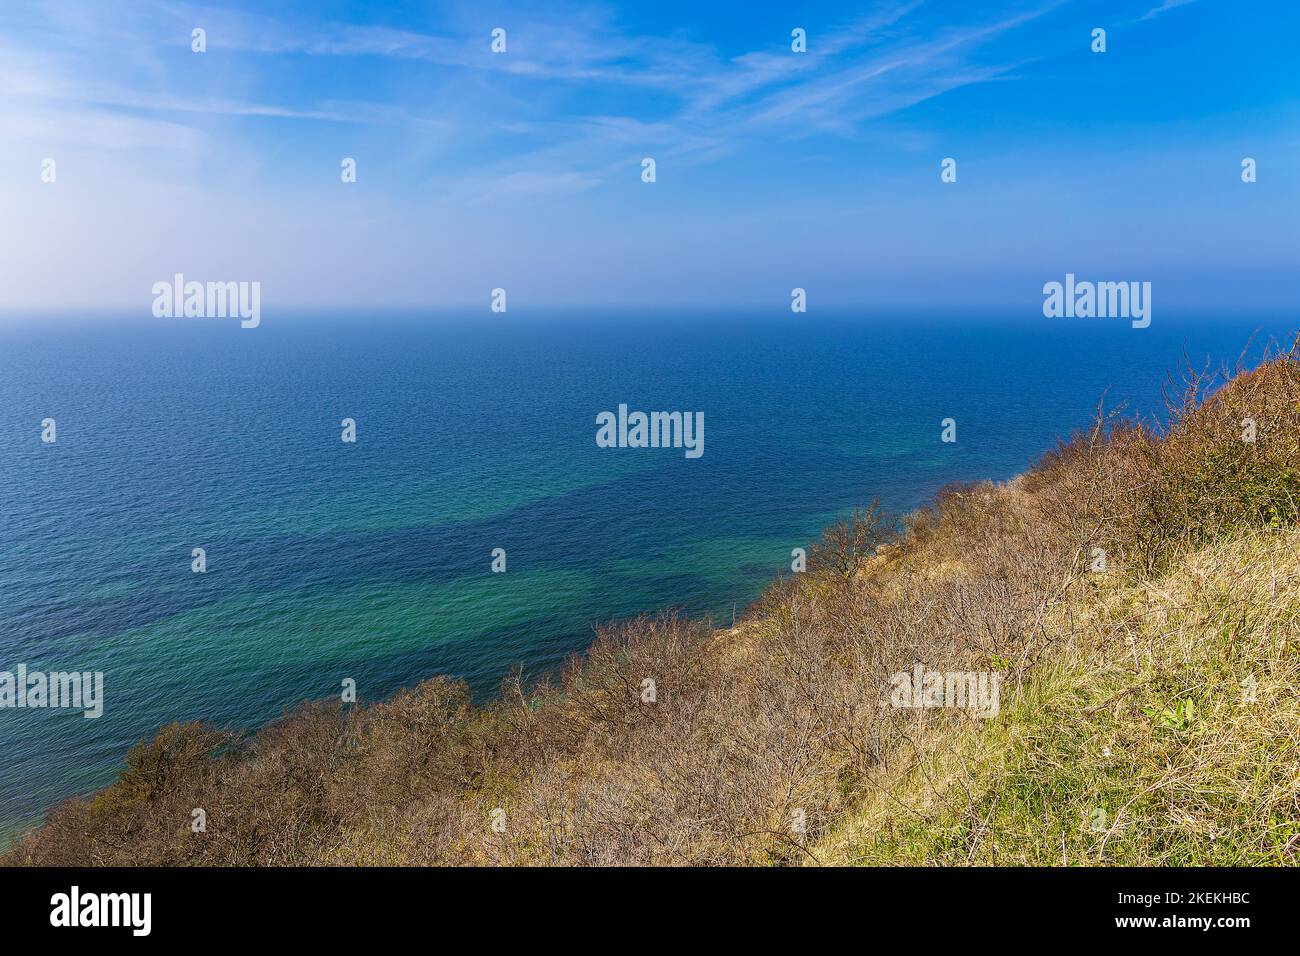 Paesaggio con scogliera sull'isola di Hiddensee, Germania. Foto Stock